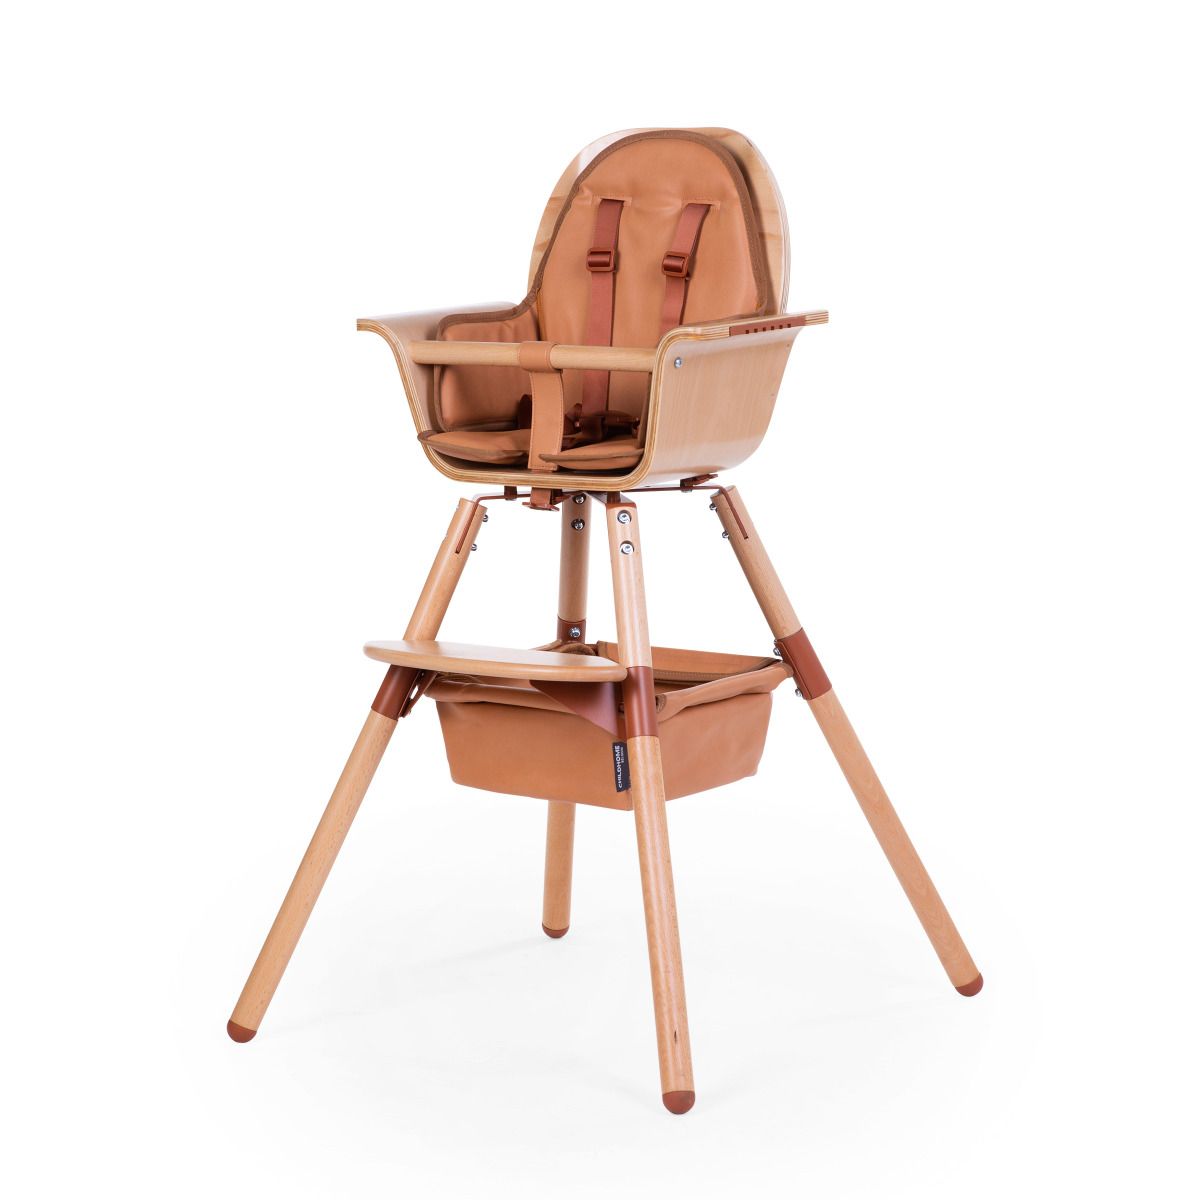 Zdjęcia - Krzesełko do karmienia Childhome Evolu Basket Leather Look Nude 